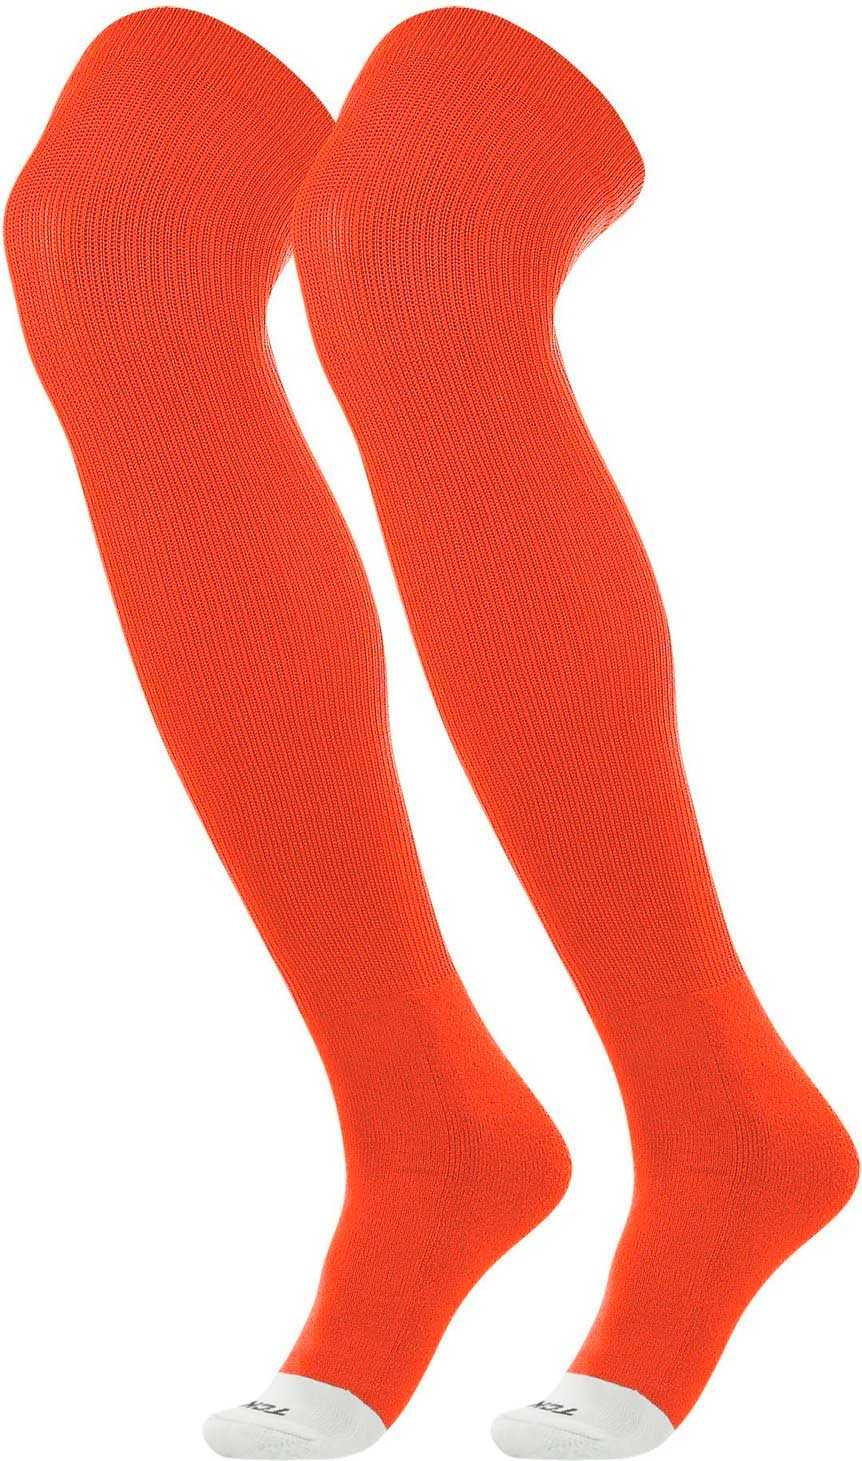 TCK Prosport Over the Knee Baseball Socks - Orange - HIT a Double